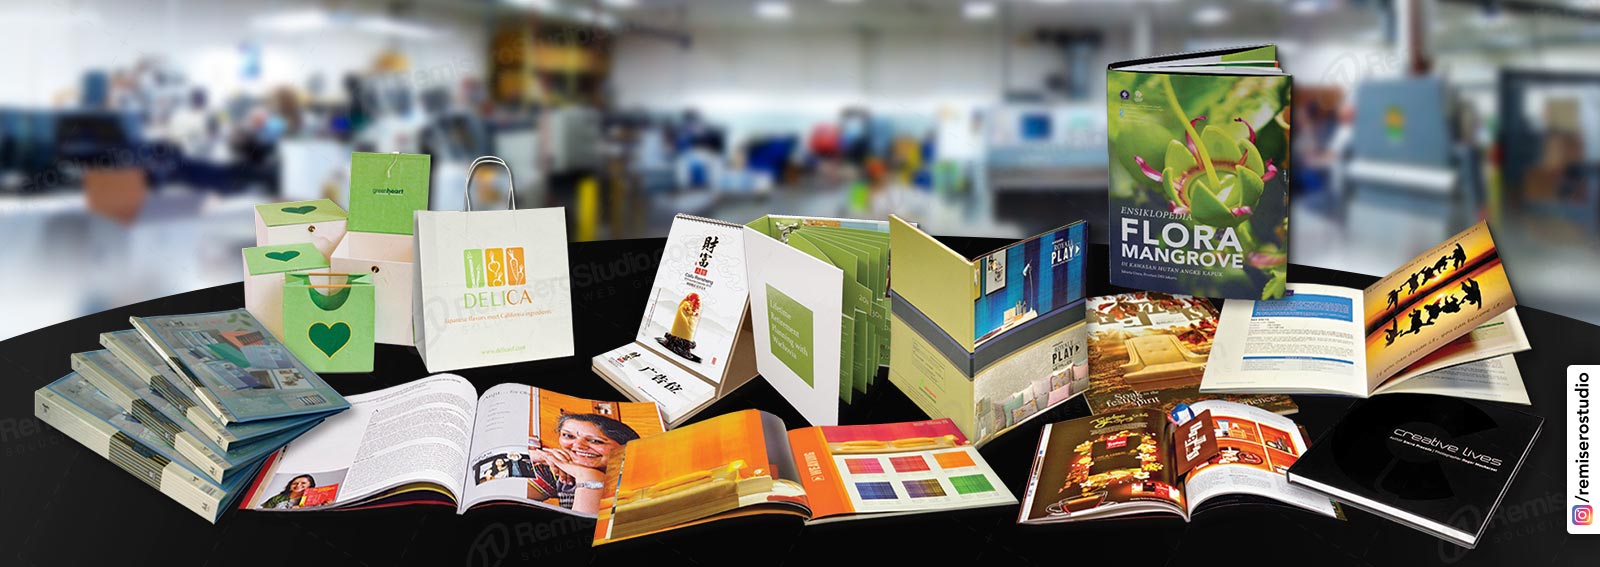 impresión de papelería en general para empresas, desde tarjetas, volantes, afiches, revistas, brochures, calendarios, cartas menú, comprobantes